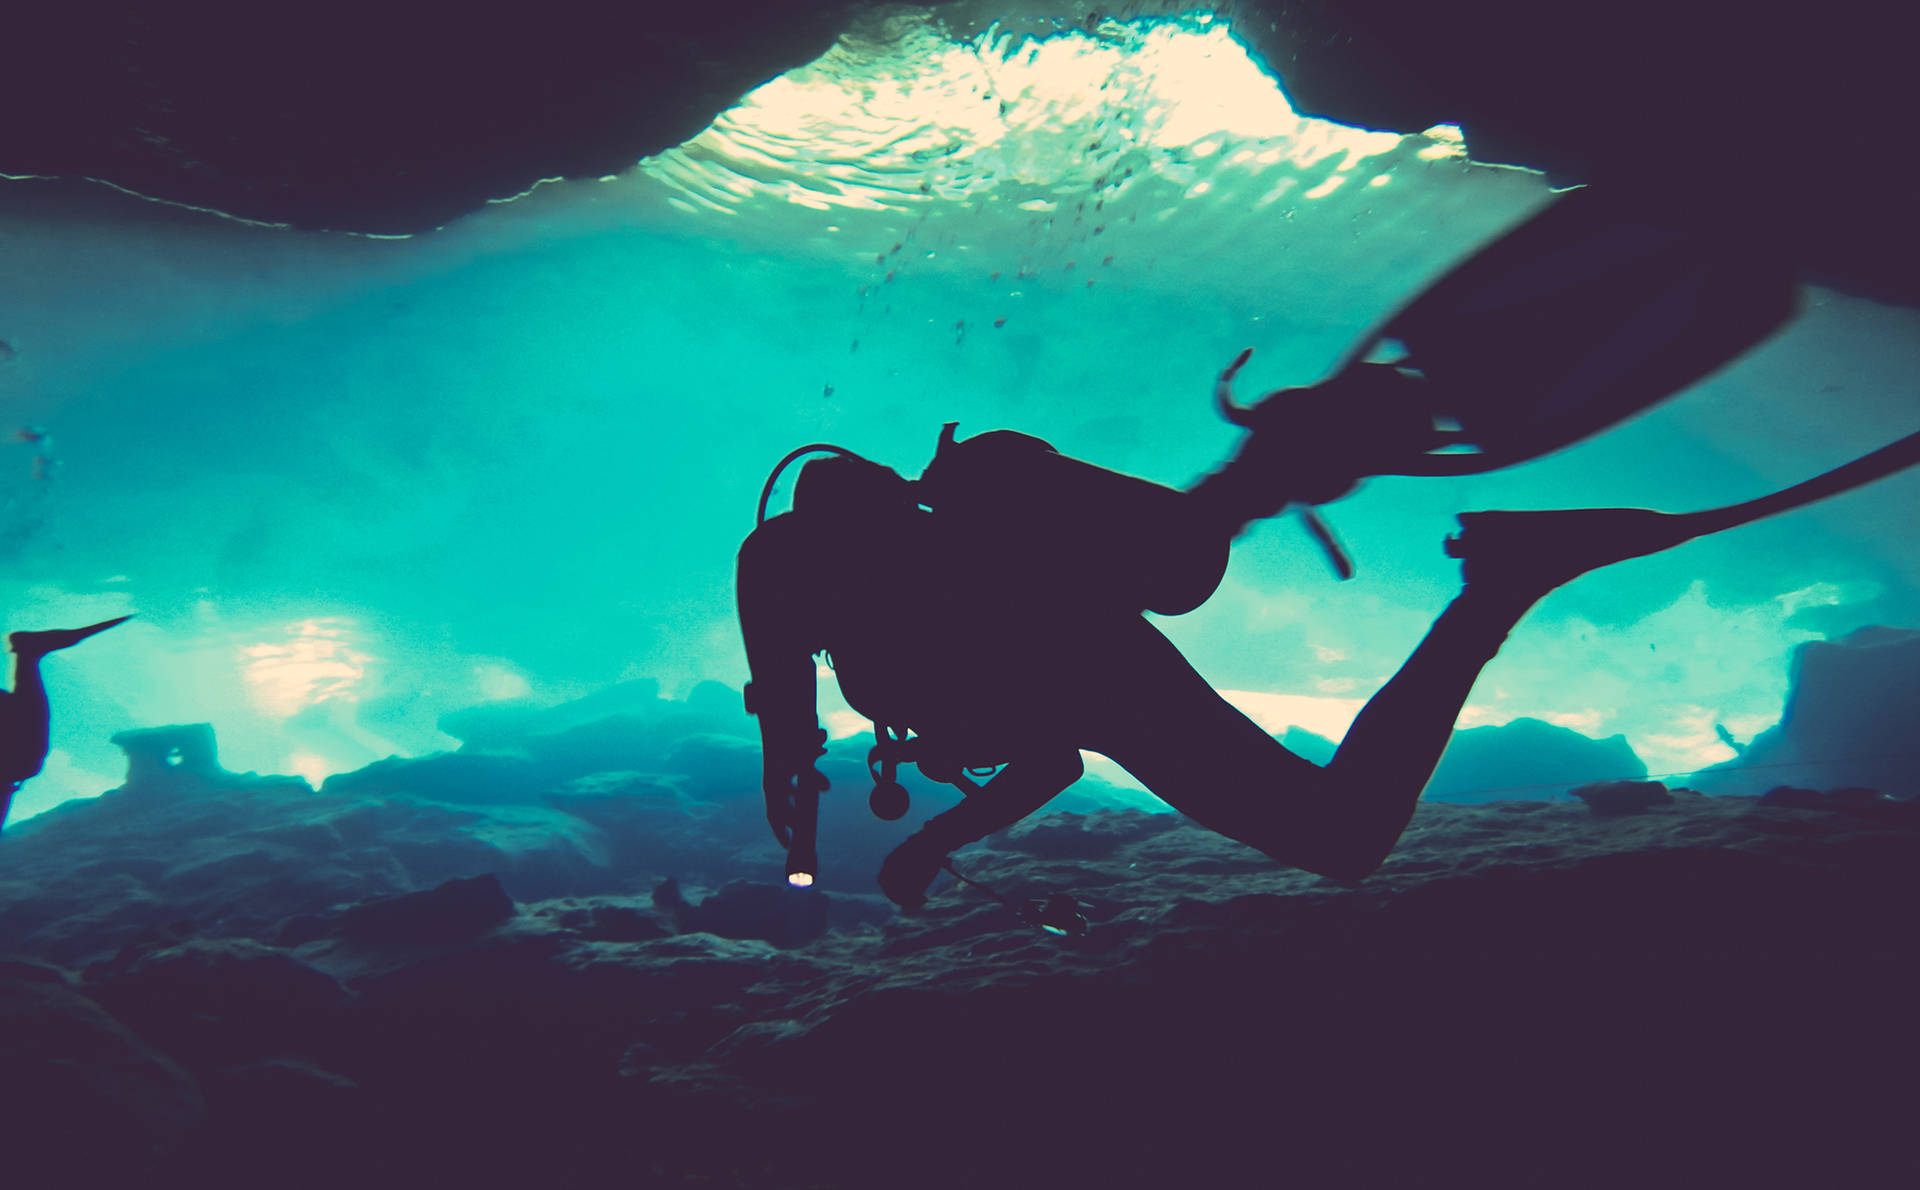 Thrilling Exploration: Scuba Diver In Underwater Cave